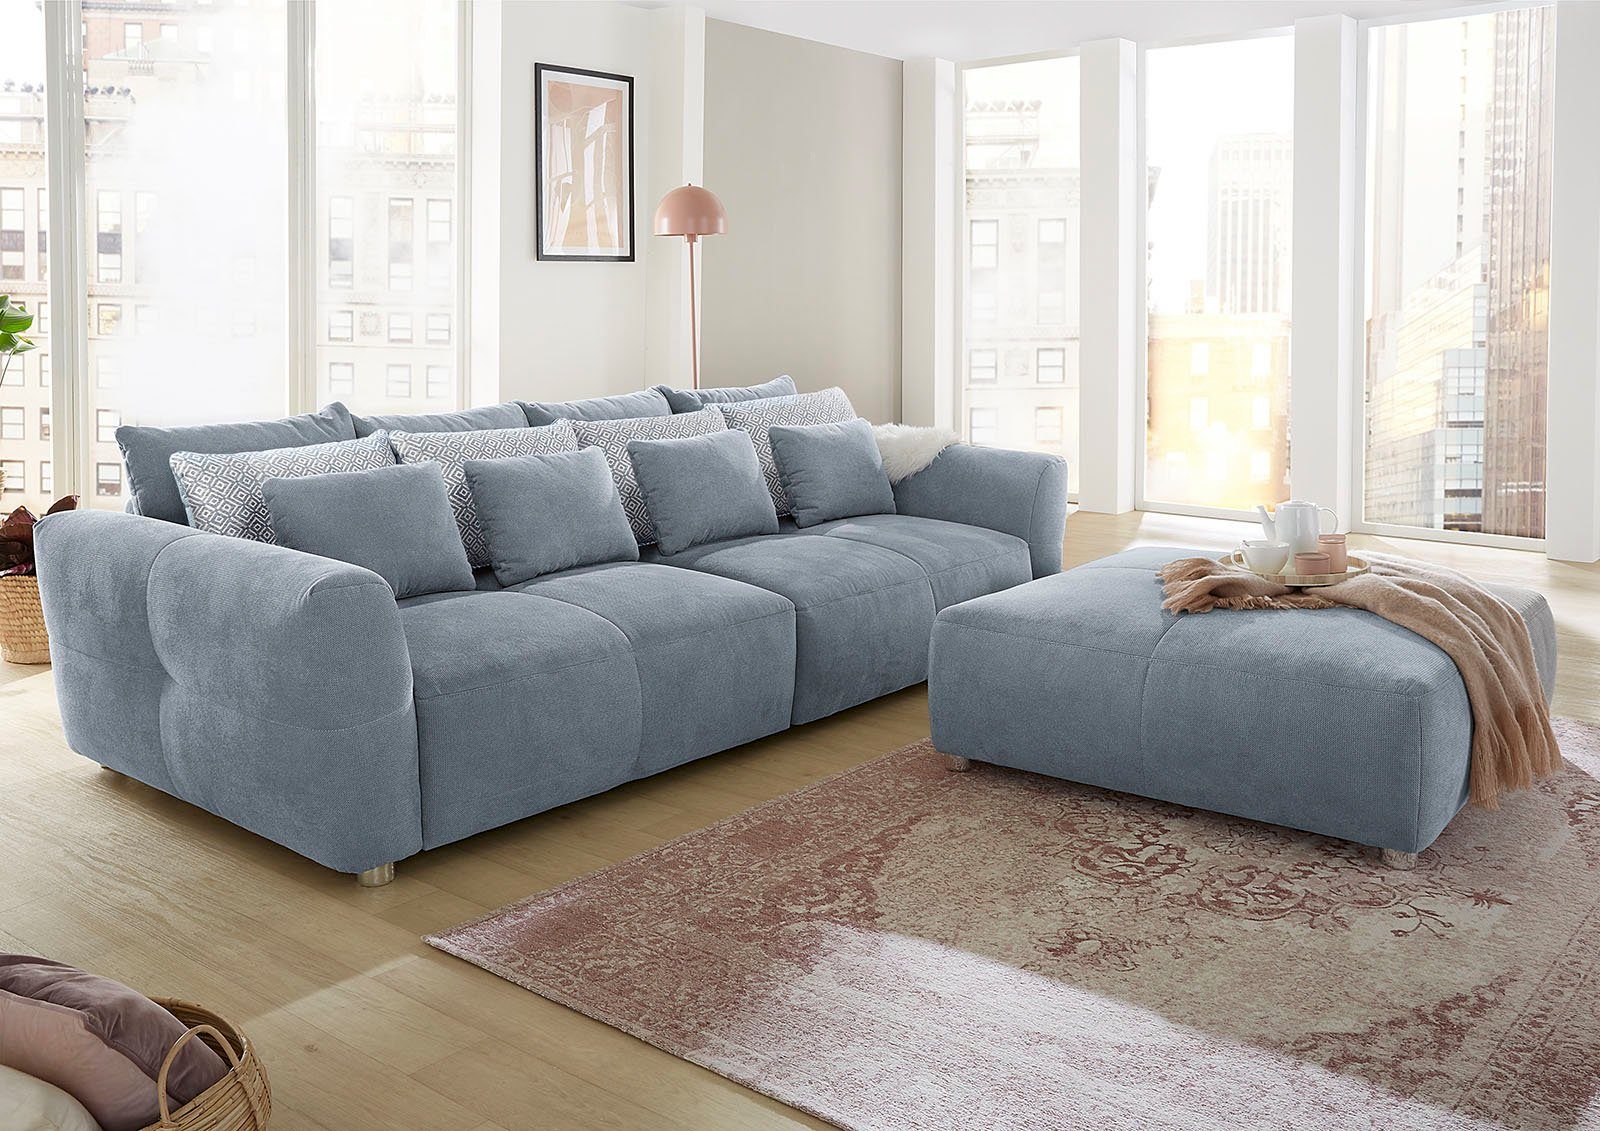 Gulliver, für Gruppe Sitzkomfort Big-Sofa hellblau kuscheligen, angenehmen mit Jockenhöfer | hellblau Federkernpolsterung